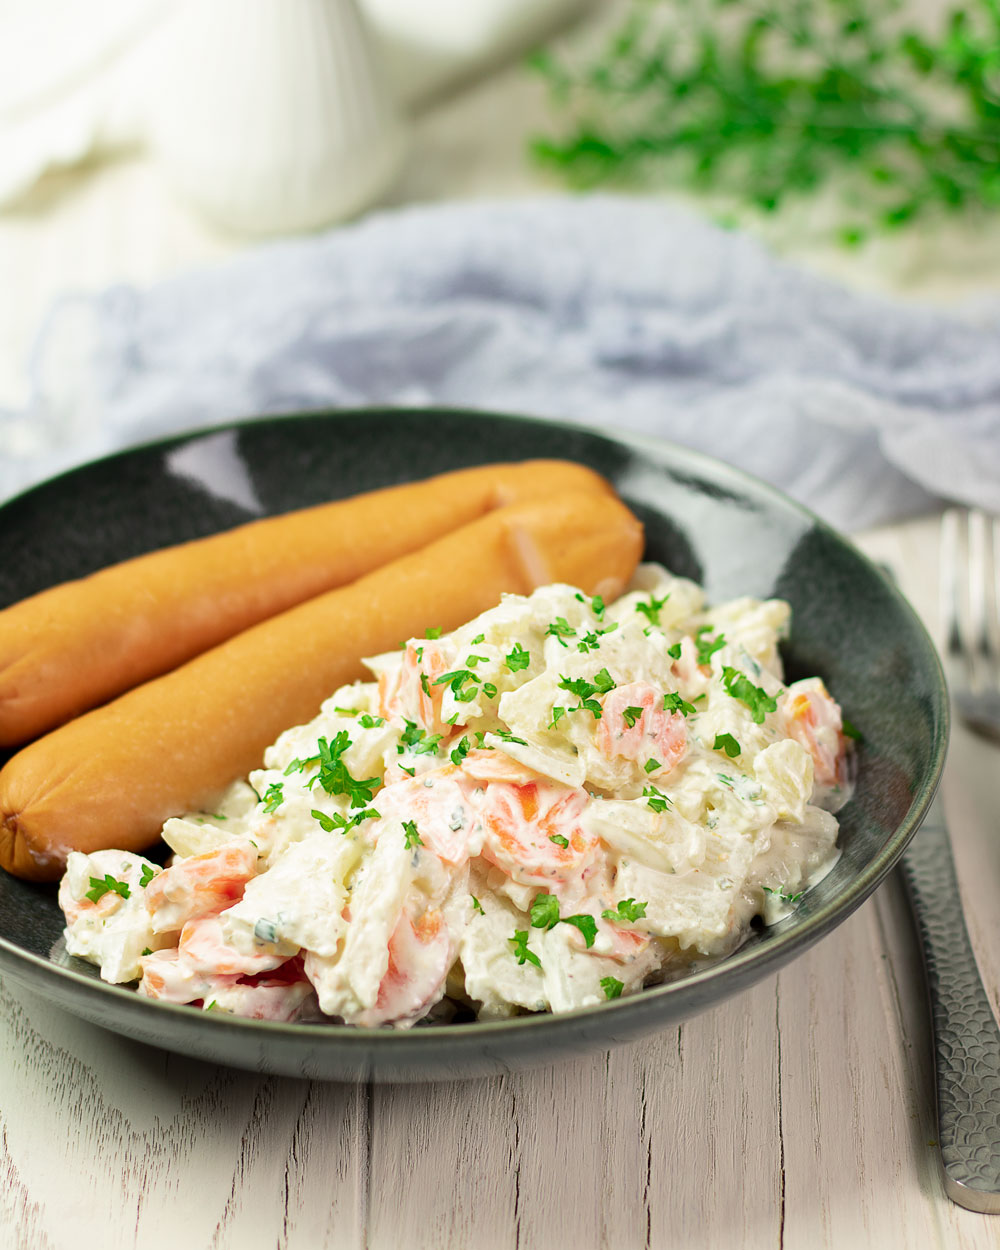 Kohlrabi-Karotten-Salat mit Mayo-Joghurt-Soße | Low Carb und Glutenfrei